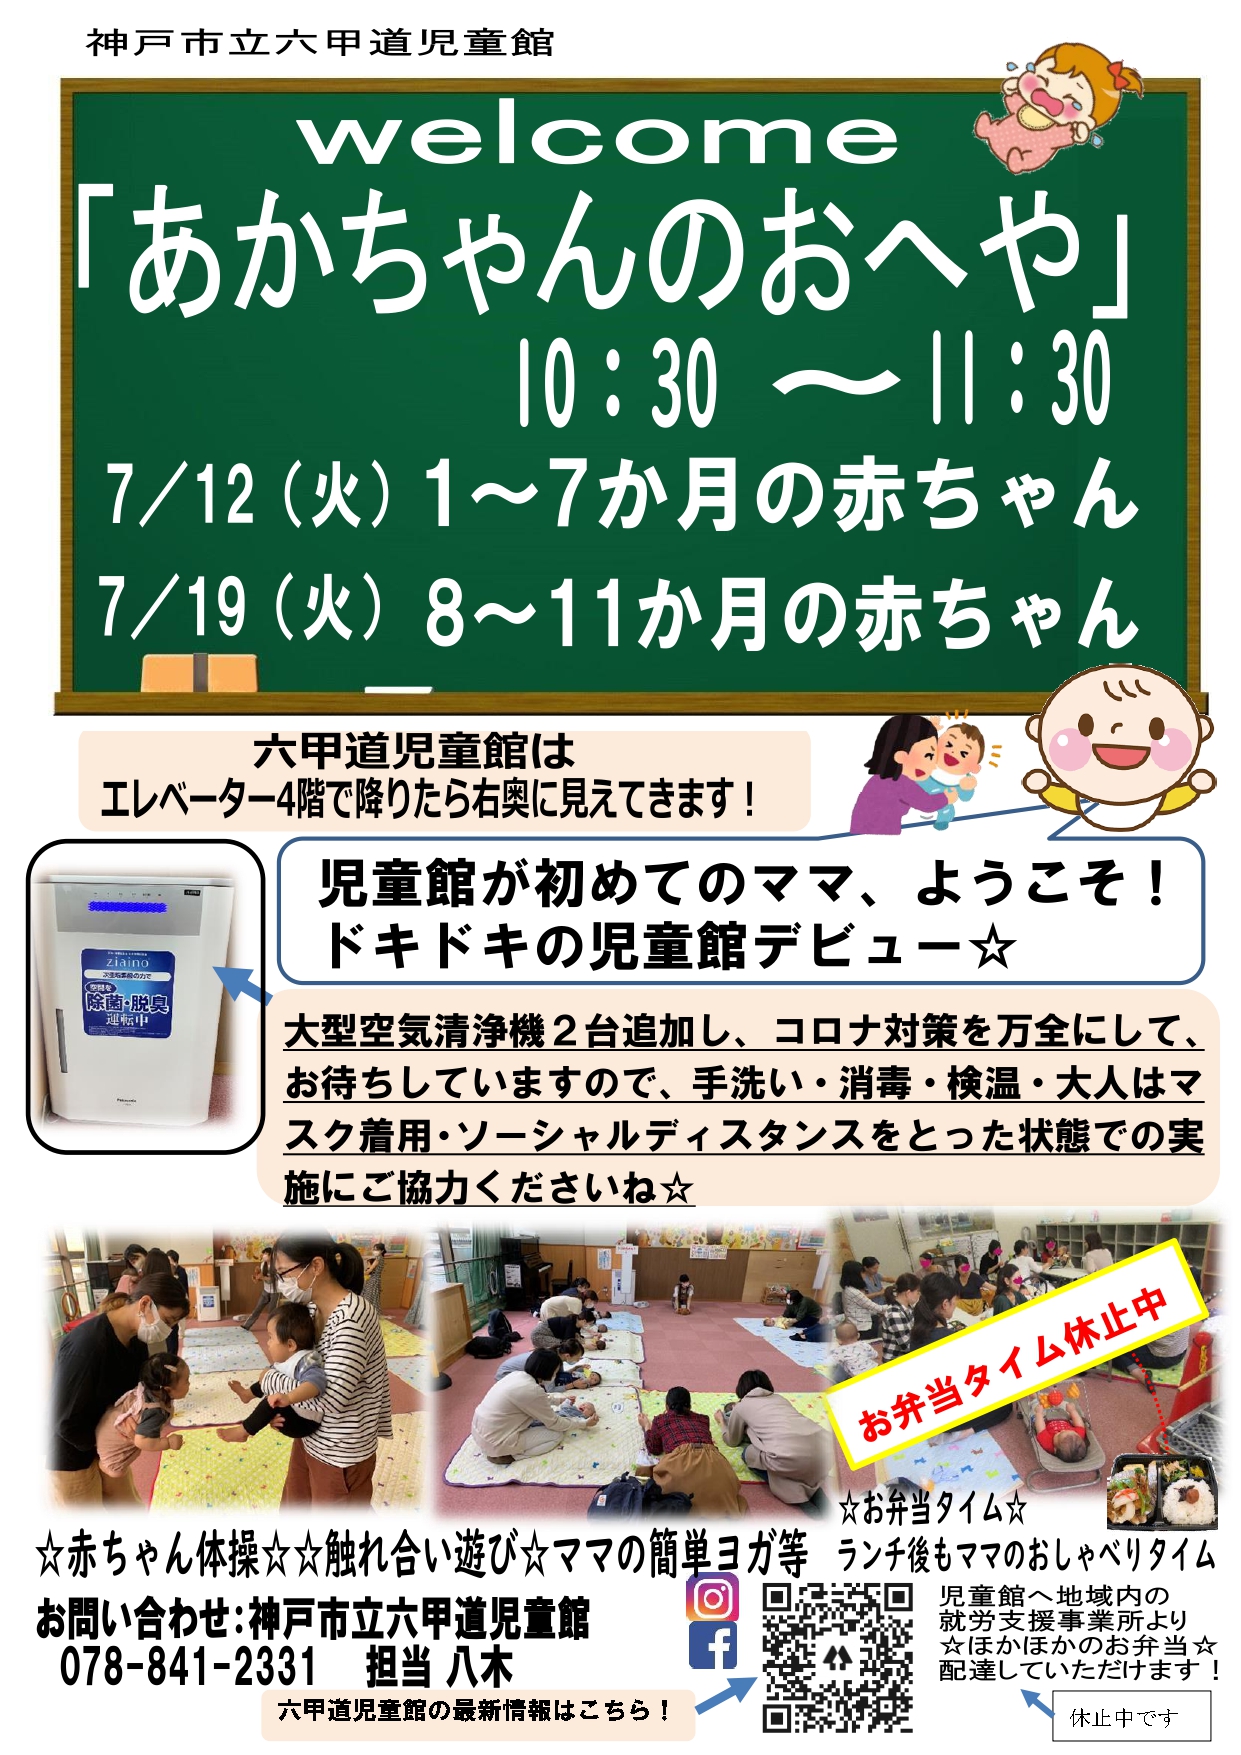 神戸市立六甲道児童館「あかちゃんのおへや」